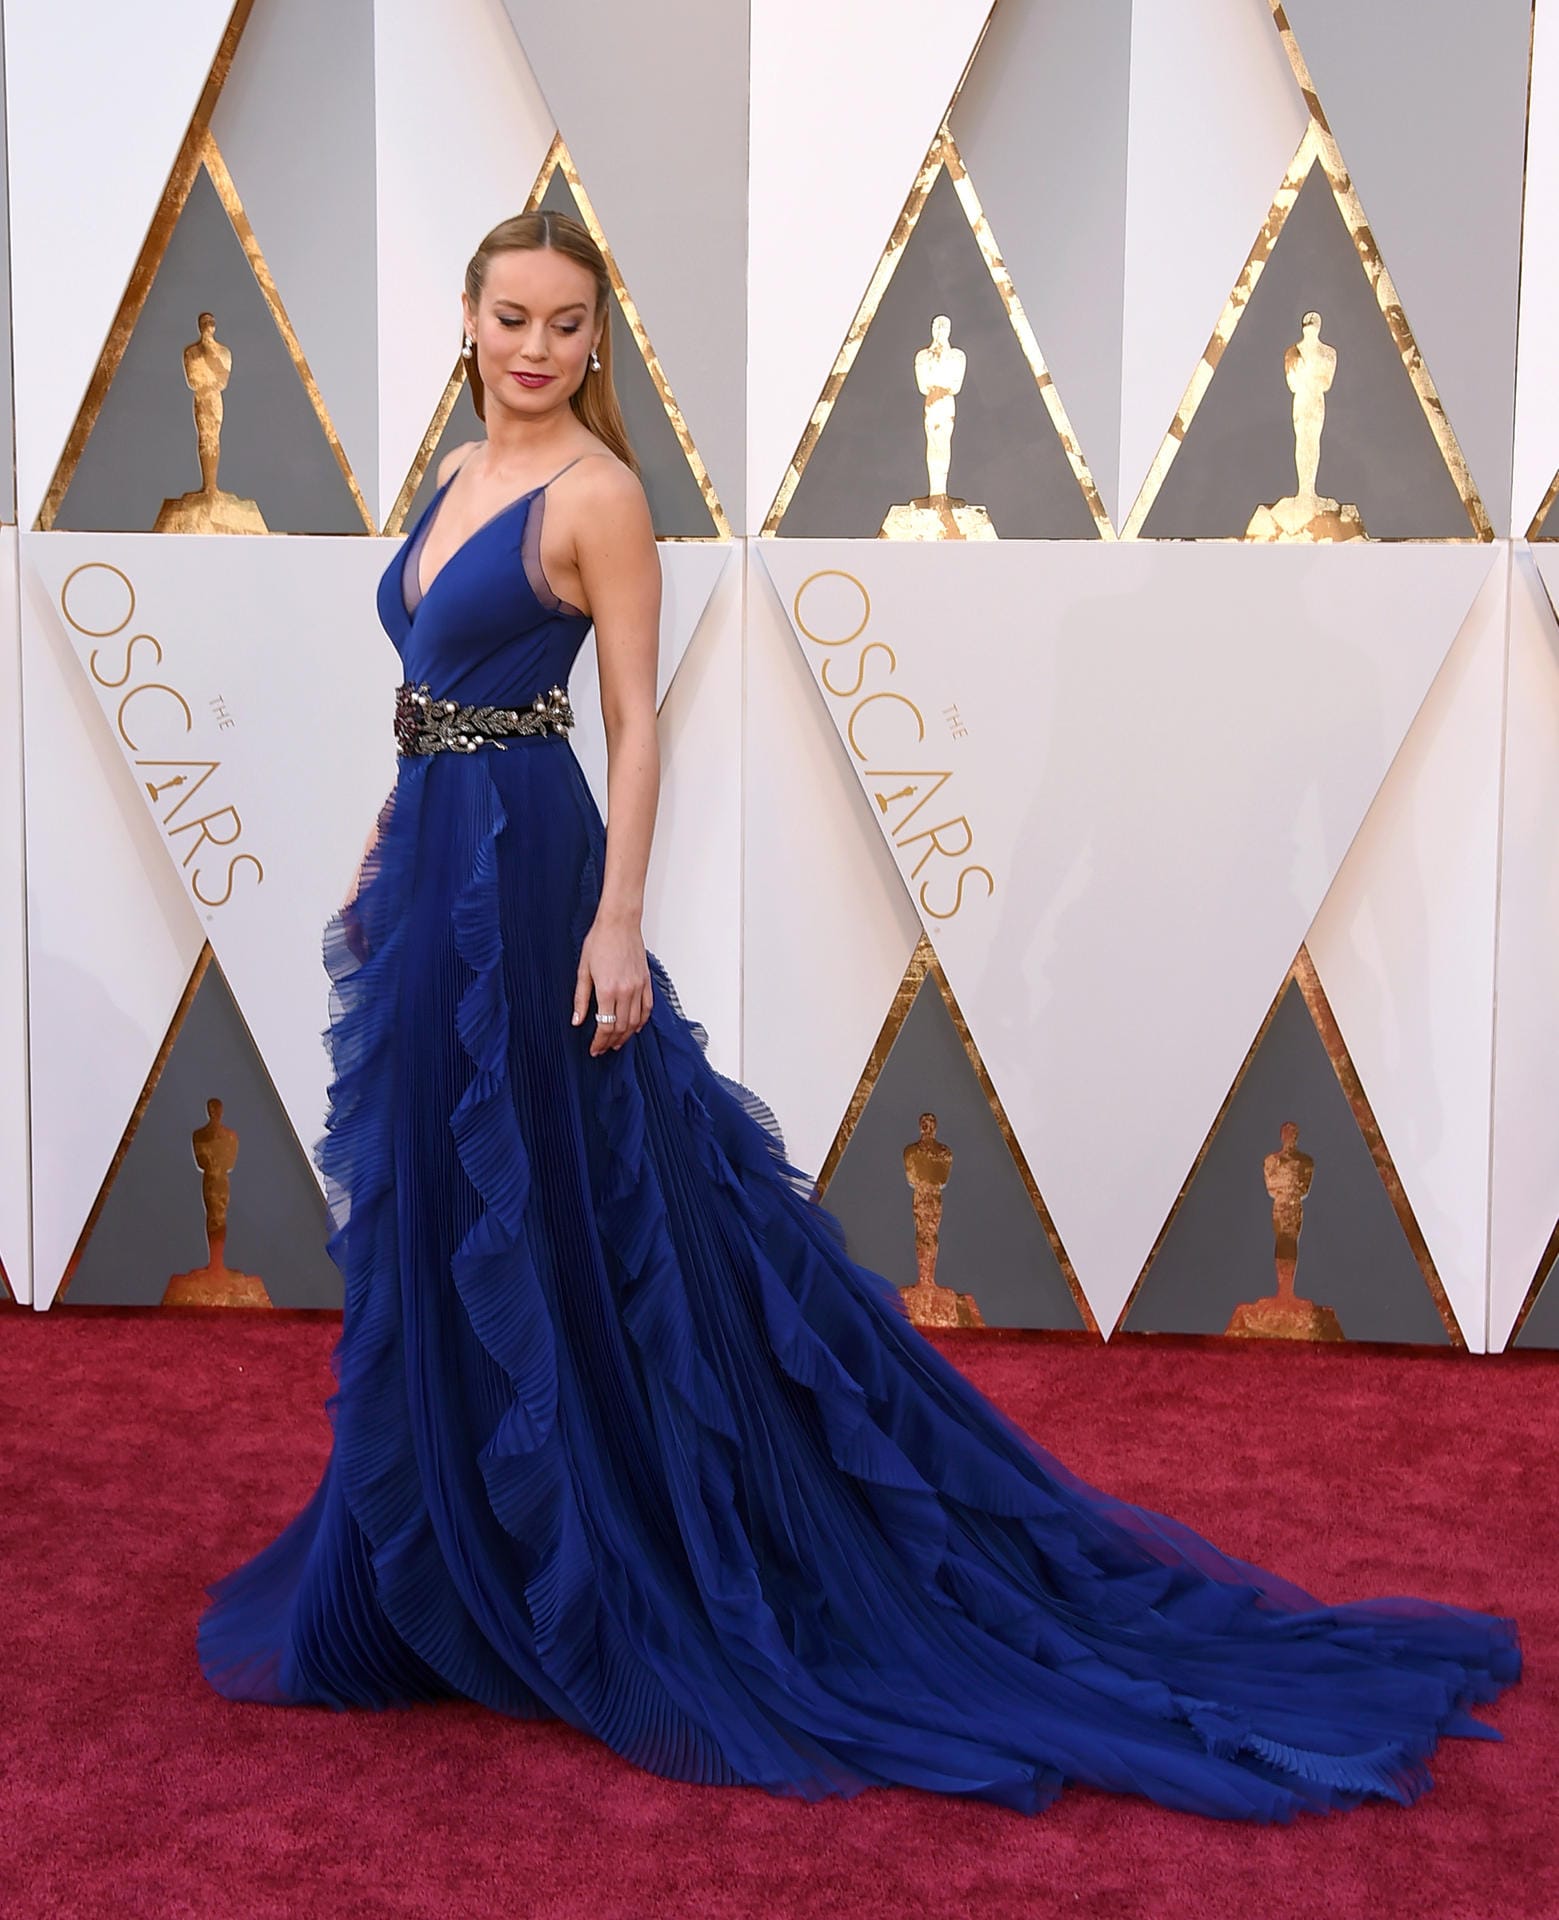 Die US-Amerikanerin Brie Larson (26) glänzte auf dem Roten Teppich in einem schulterfreien, nachtblauen Kleid.